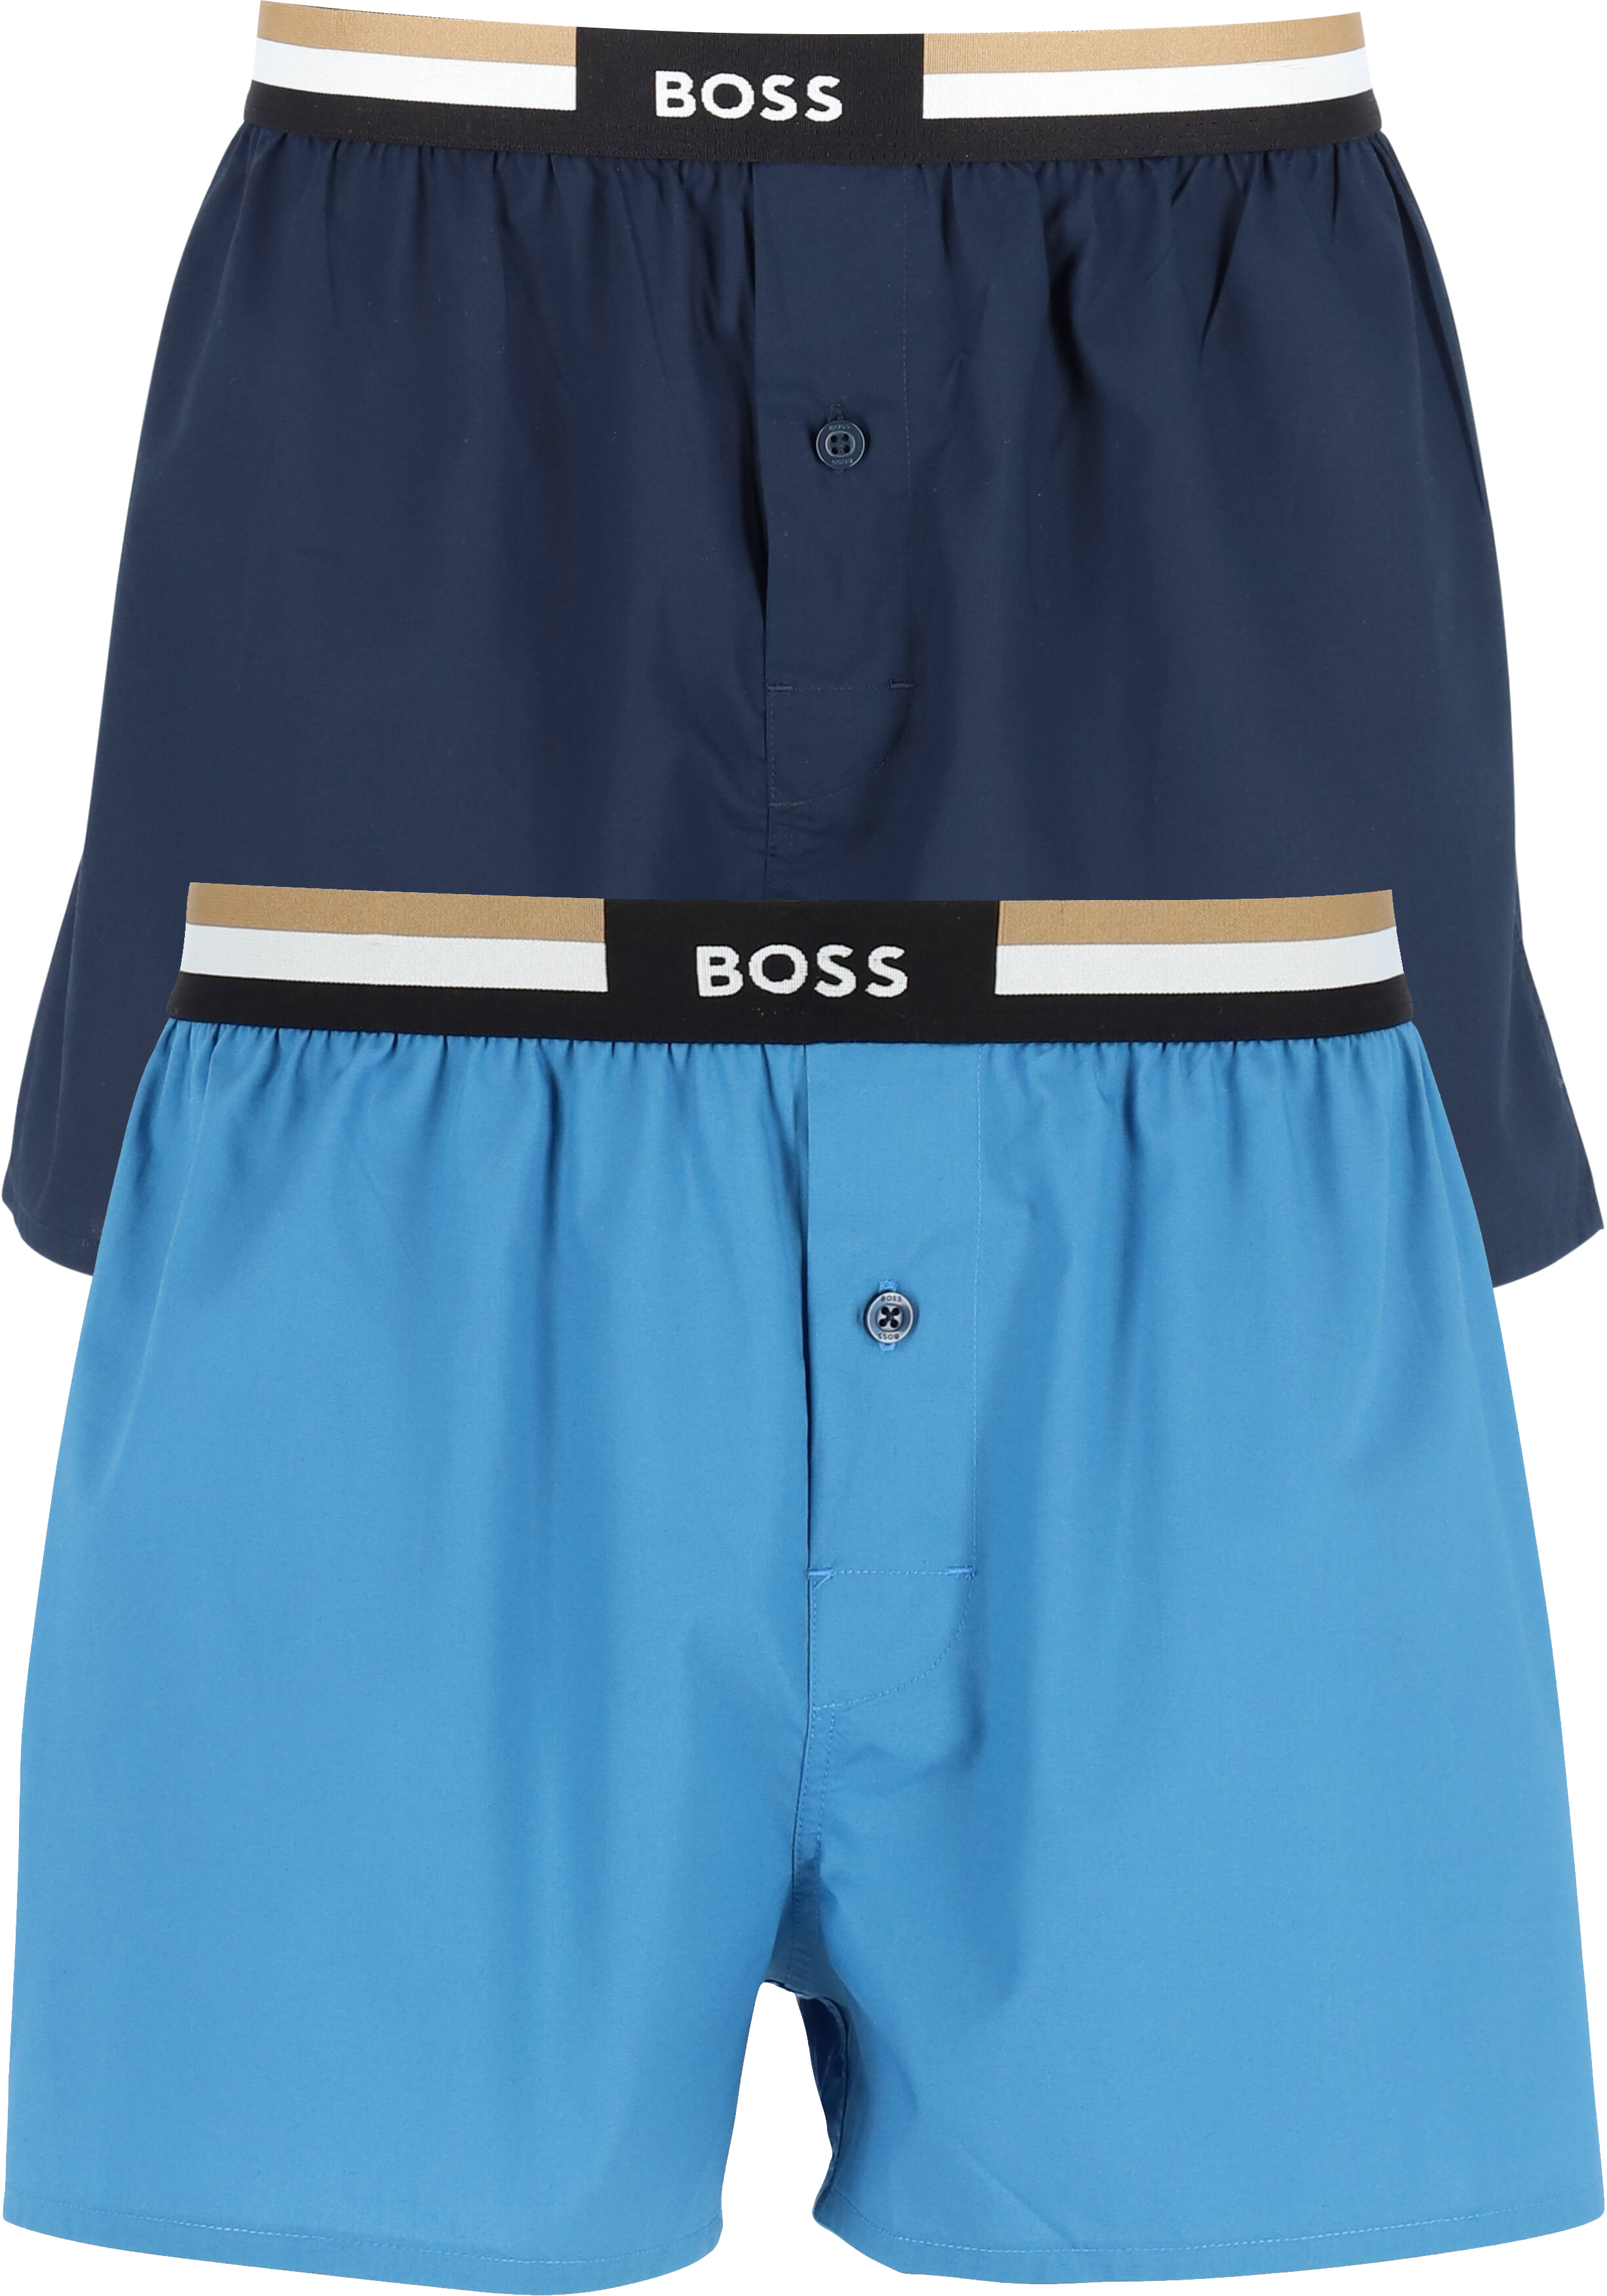 HUGO BOSS boxershorts woven (2-pack), heren boxers wijd model, blauw